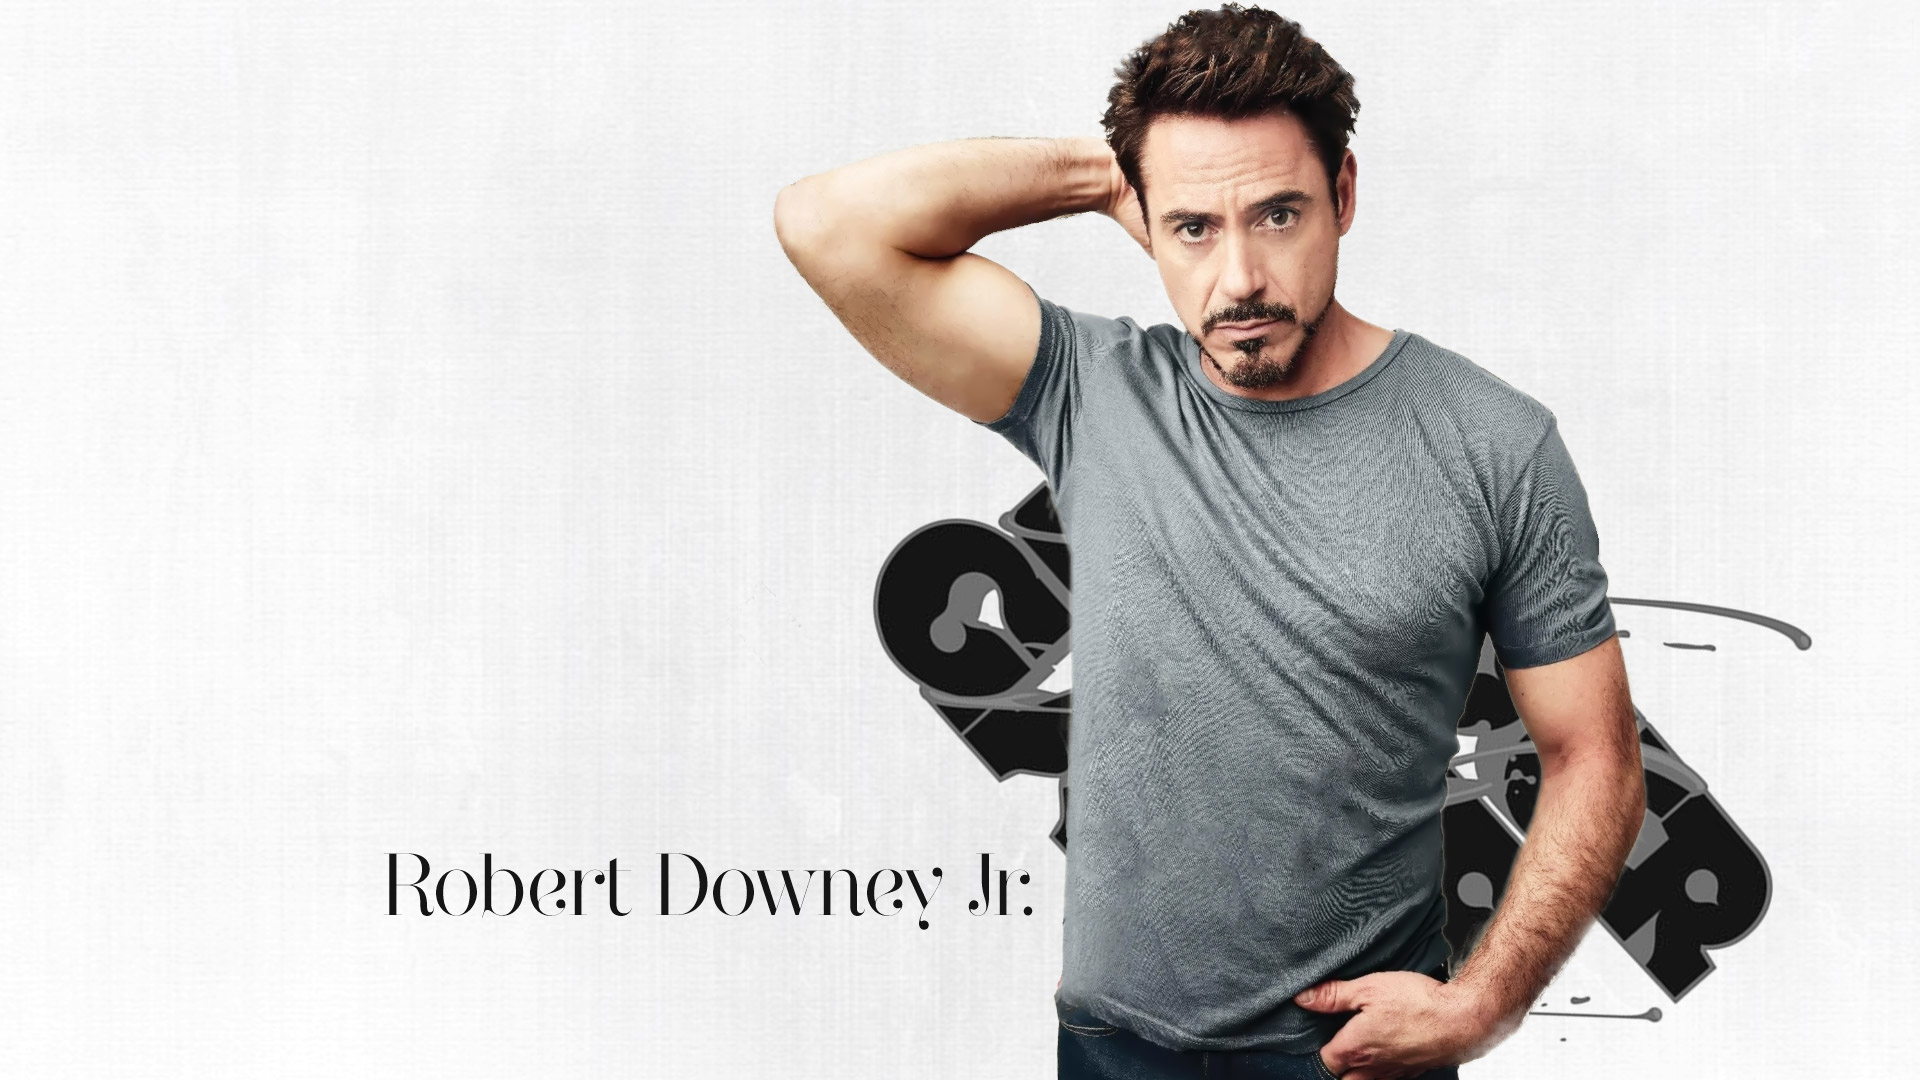  Robert Downey Jr Cellphone FHD pic